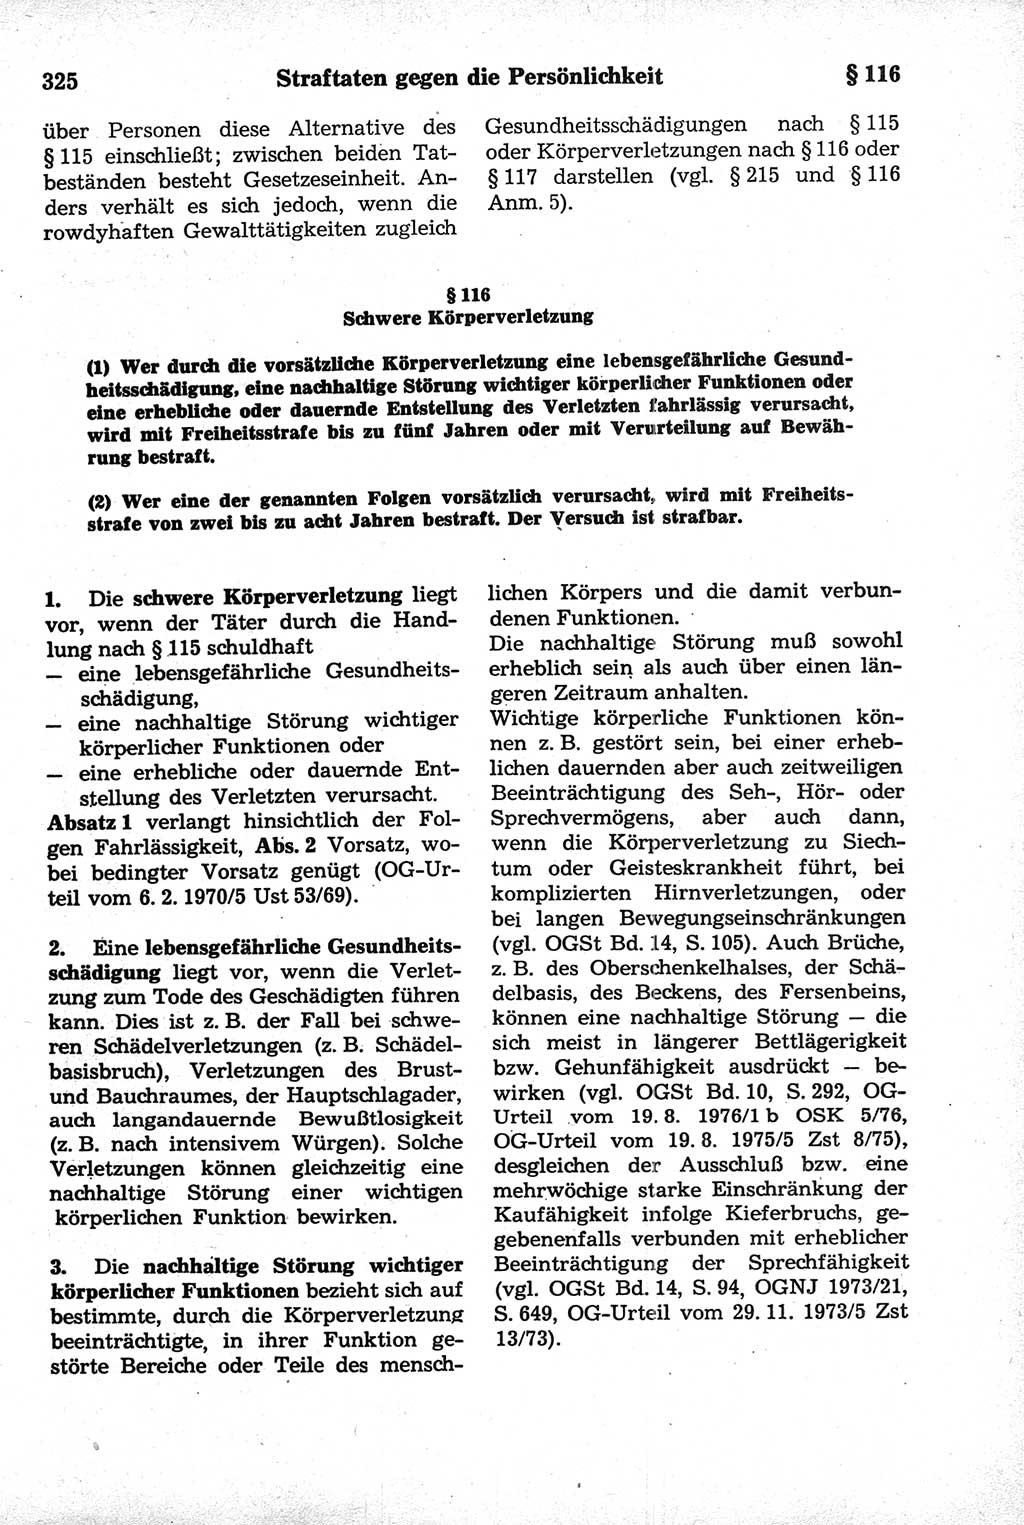 Strafrecht der Deutschen Demokratischen Republik (DDR), Kommentar zum Strafgesetzbuch (StGB) 1981, Seite 325 (Strafr. DDR Komm. StGB 1981, S. 325)